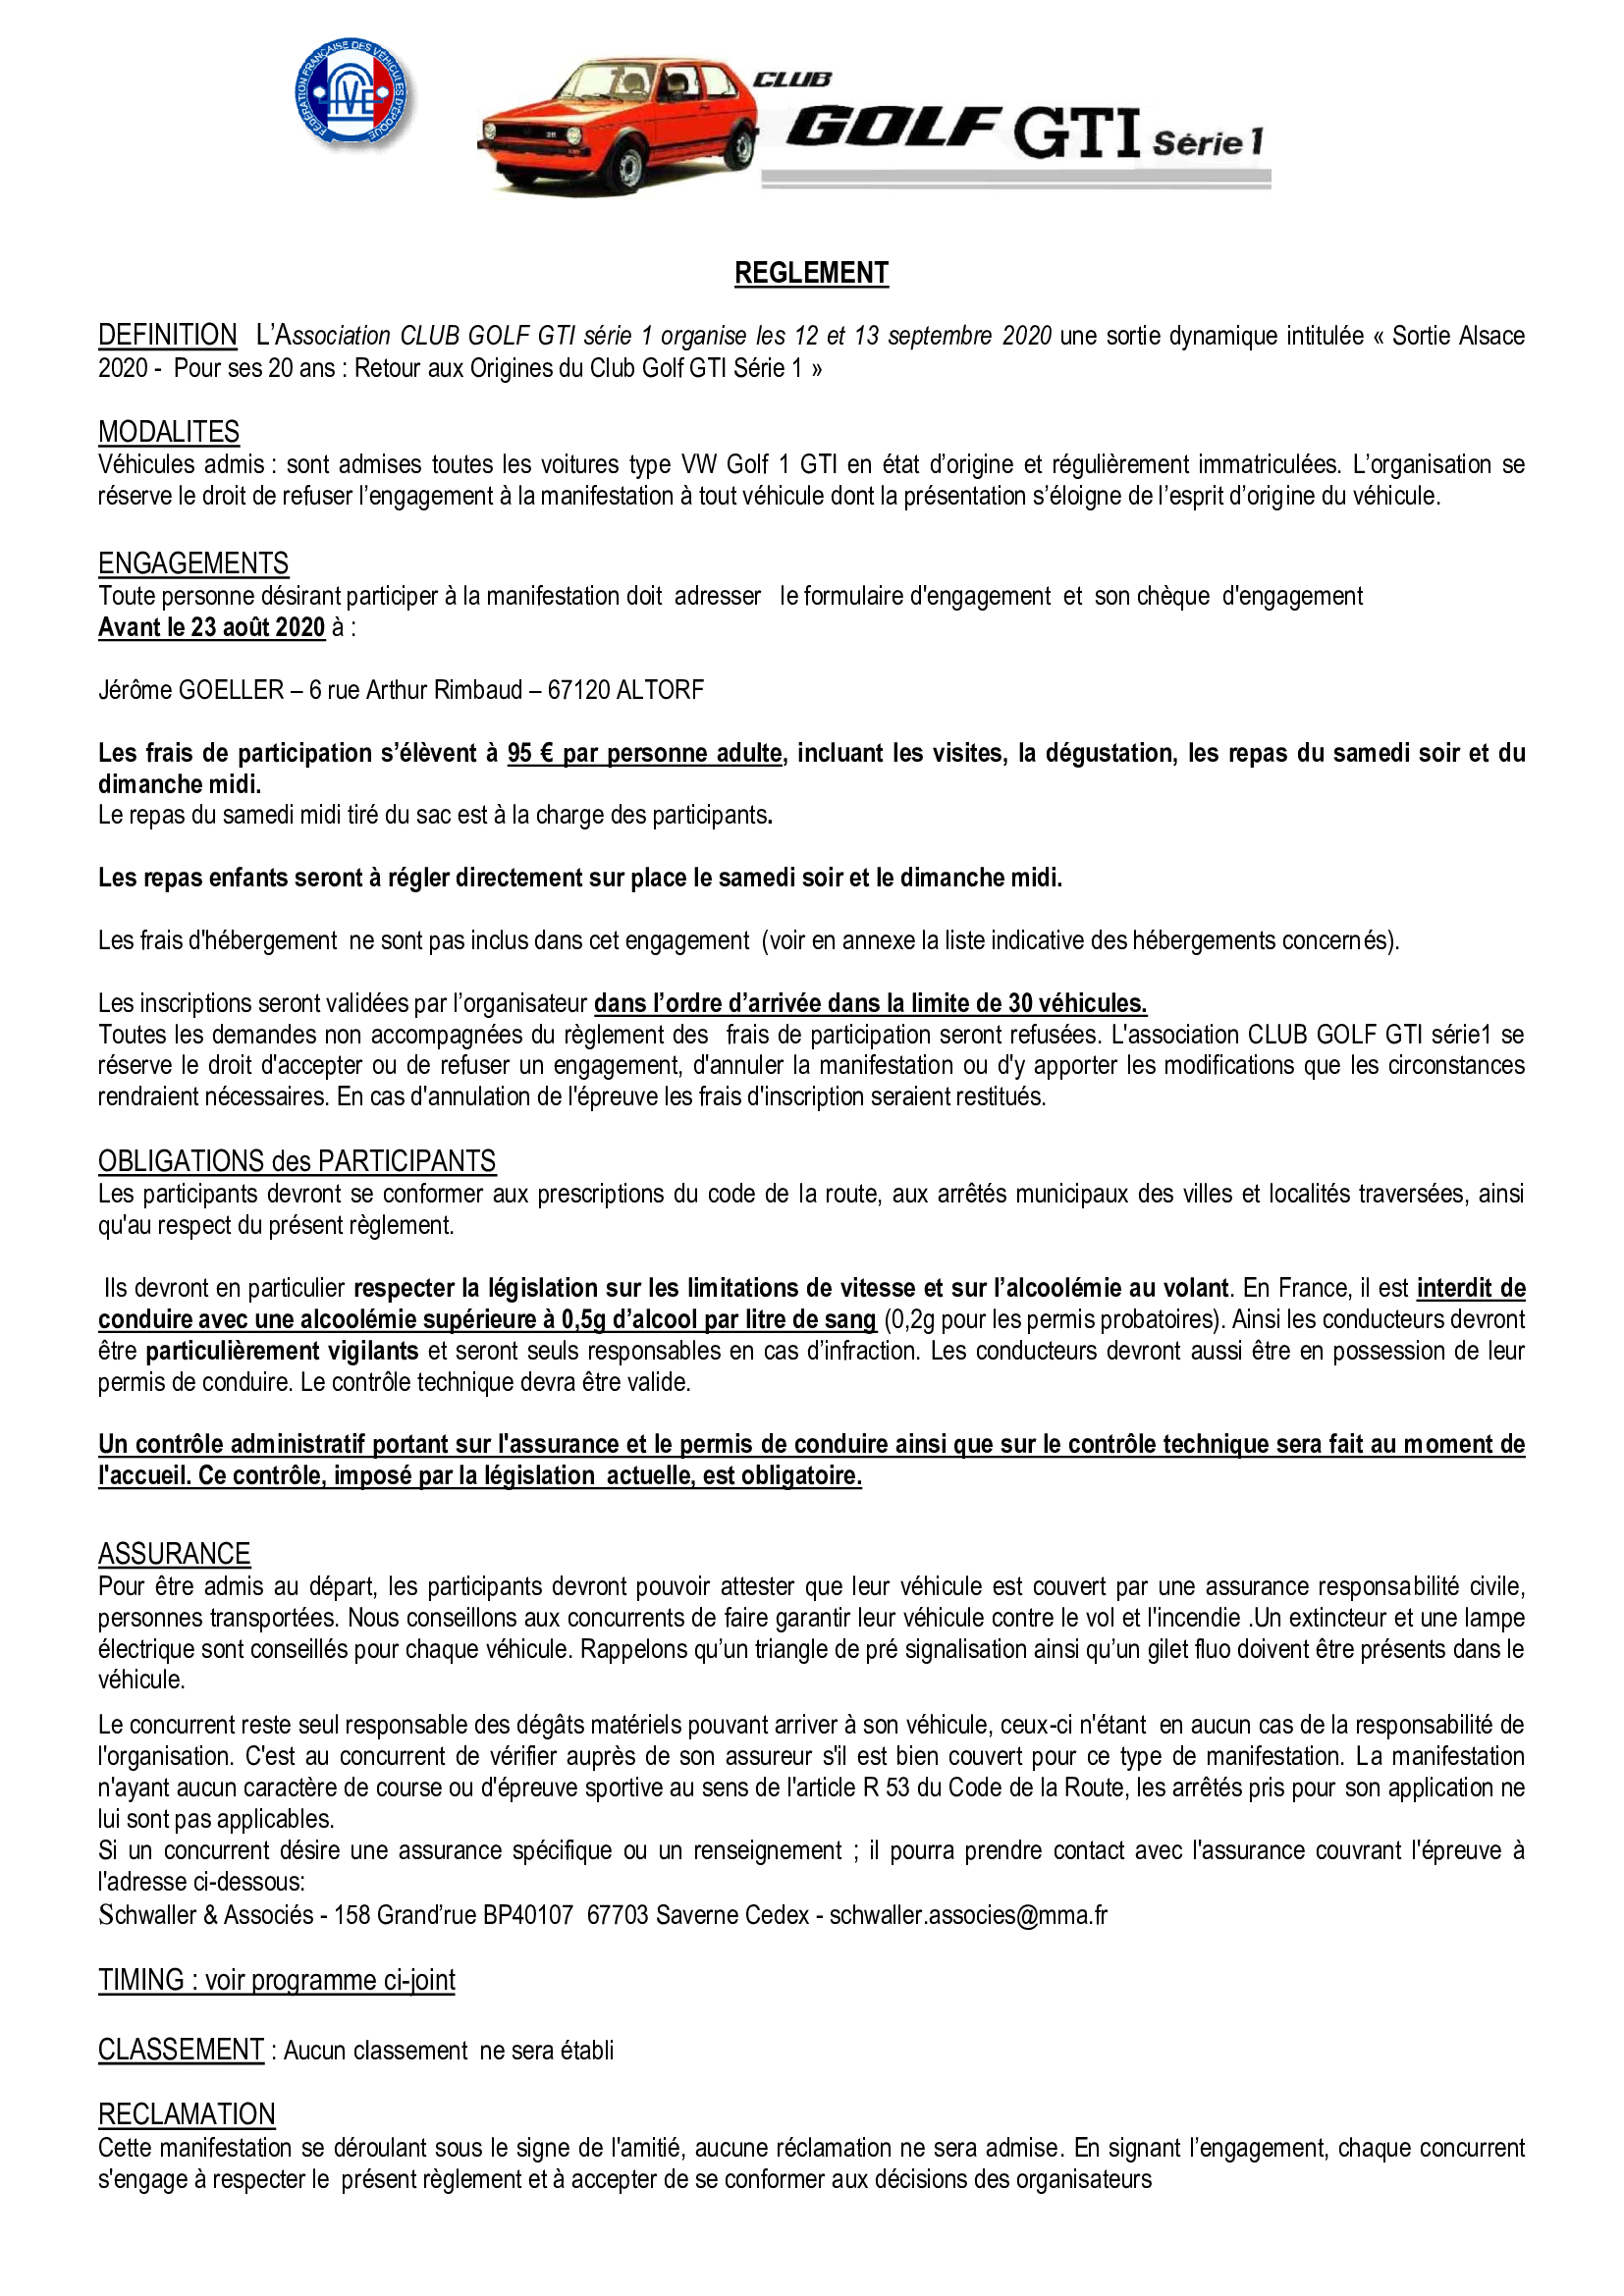 Sortie Alsace - 20ème Anniversaire du Club - 12/13 sept 2020 - Page 2 20073110260521506916944065